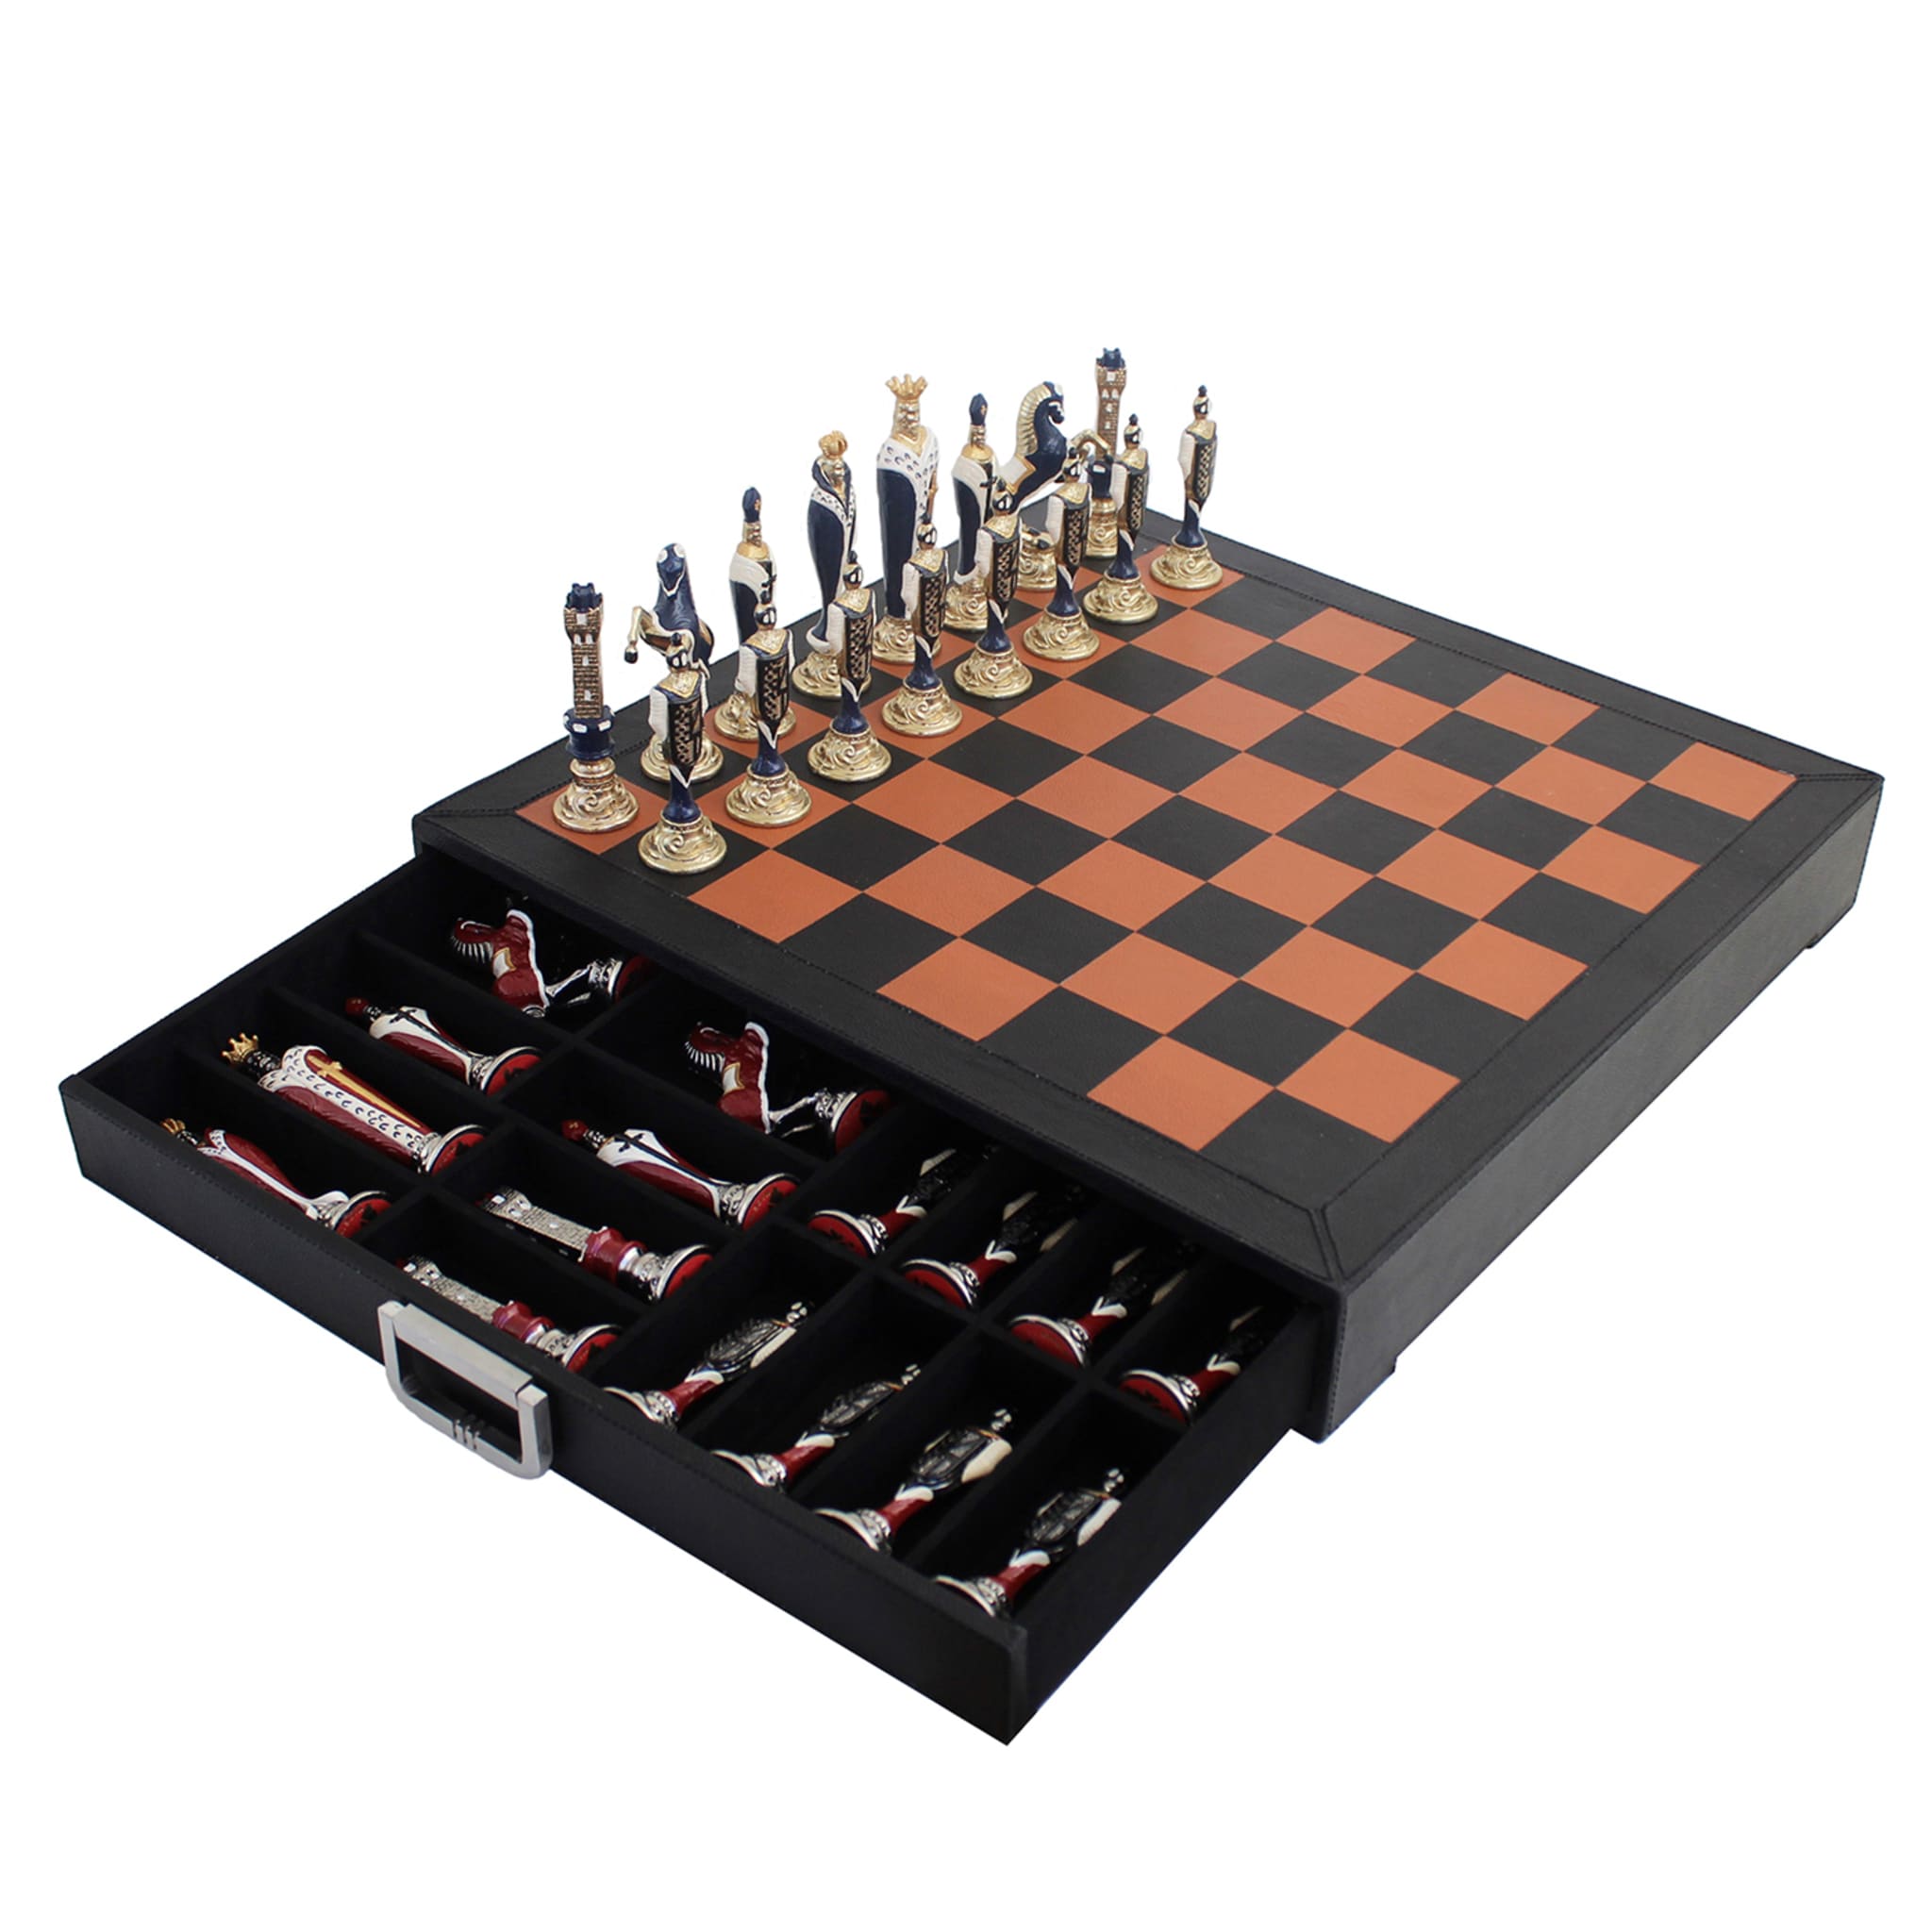 Rinascimento Fiorentino Chess Set - Alternative view 2